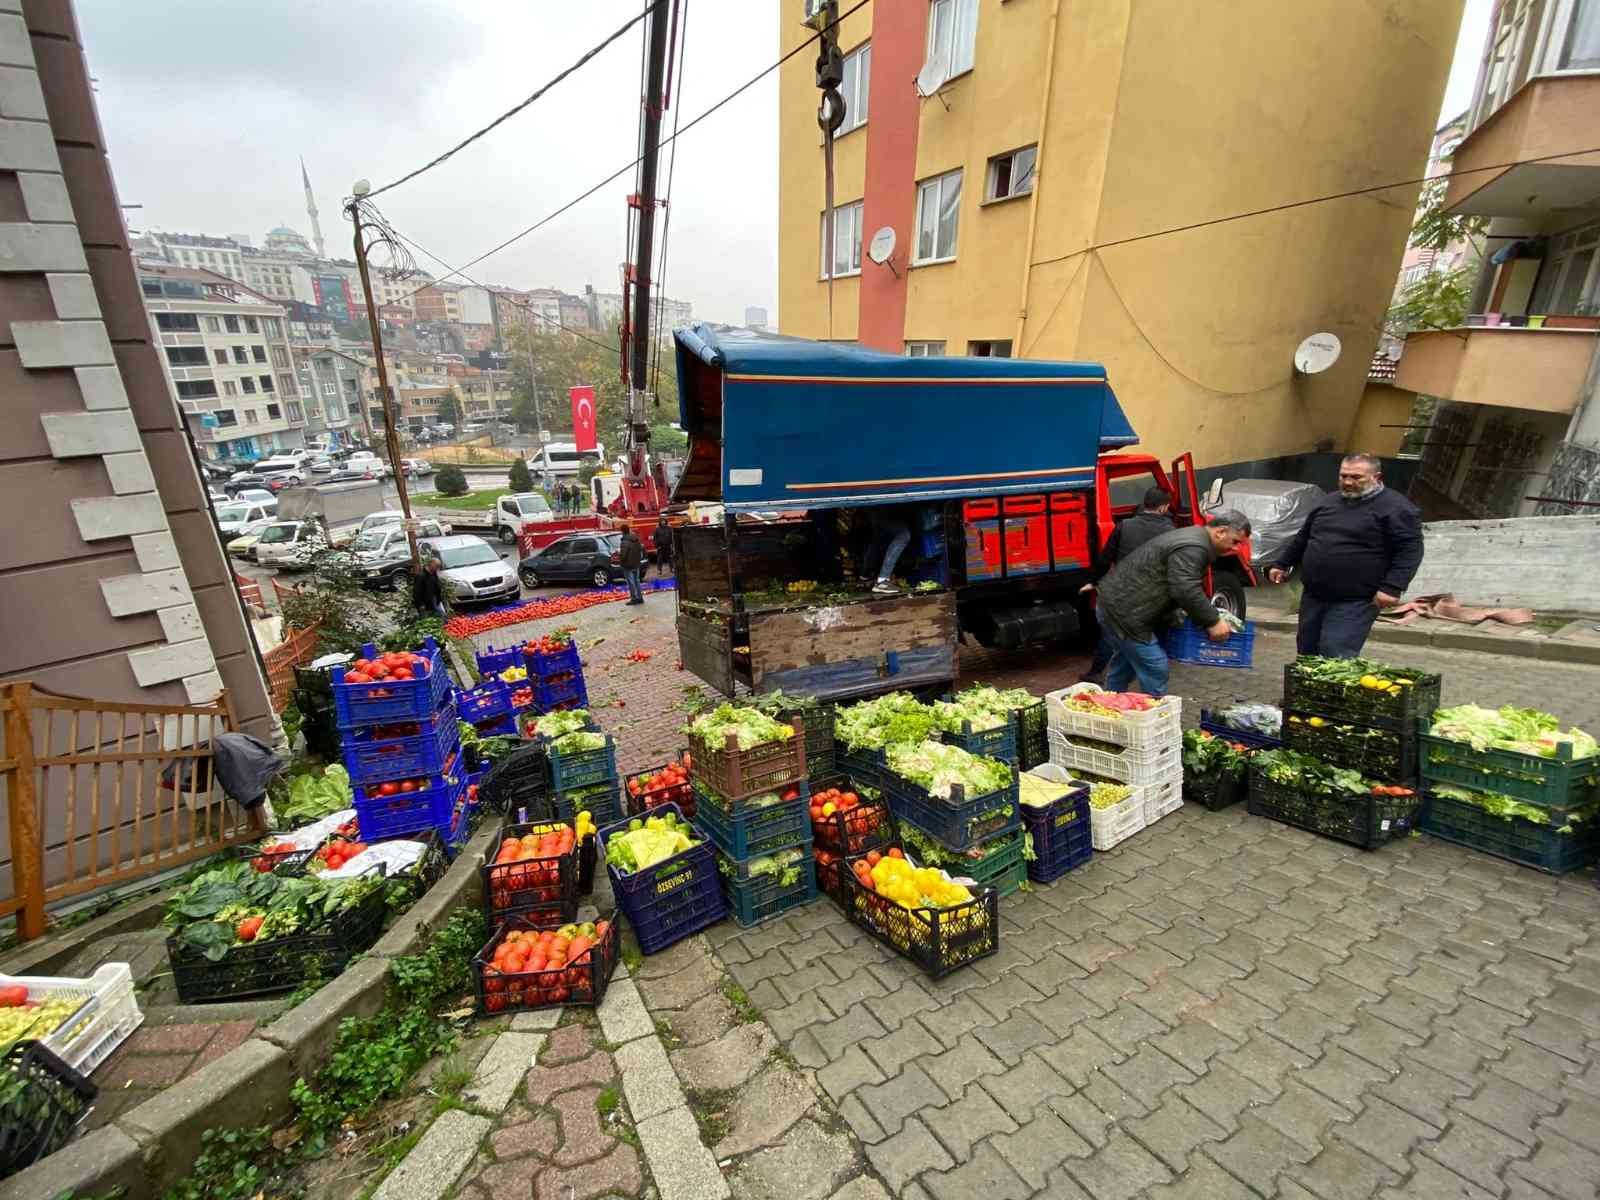 Kağıthane’de kamyonet aracın üzerine devrildi: Sürücü ve arkadaşı domatesleri ayıkladı #istanbul